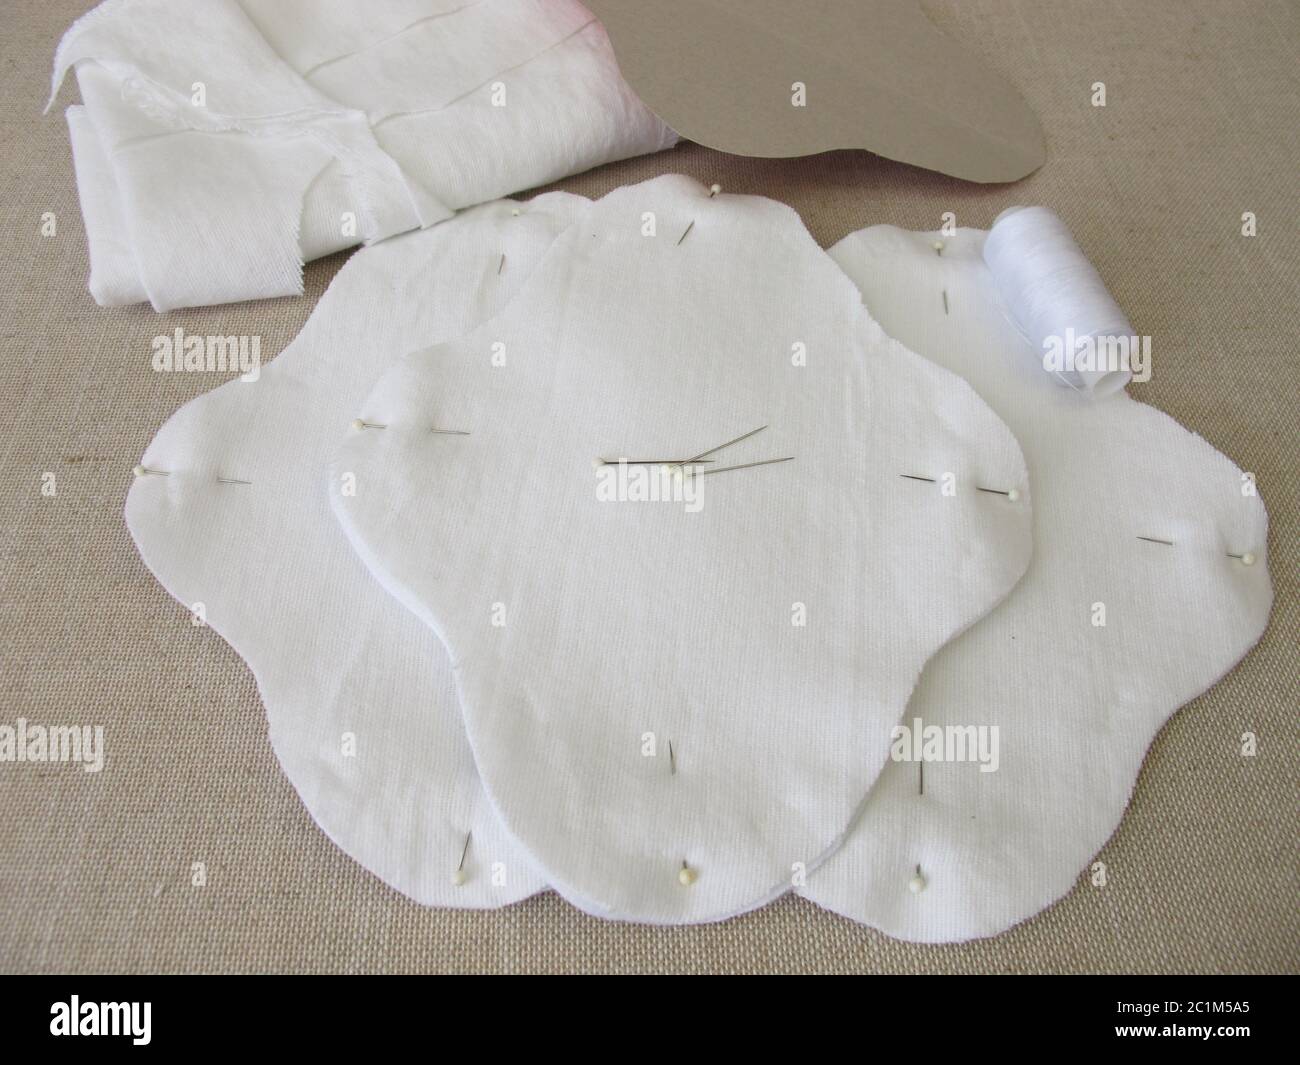 Waschbare, selbstgenähte Monatshygiene-Slipeinlage aus Stoff  Stockfotografie - Alamy